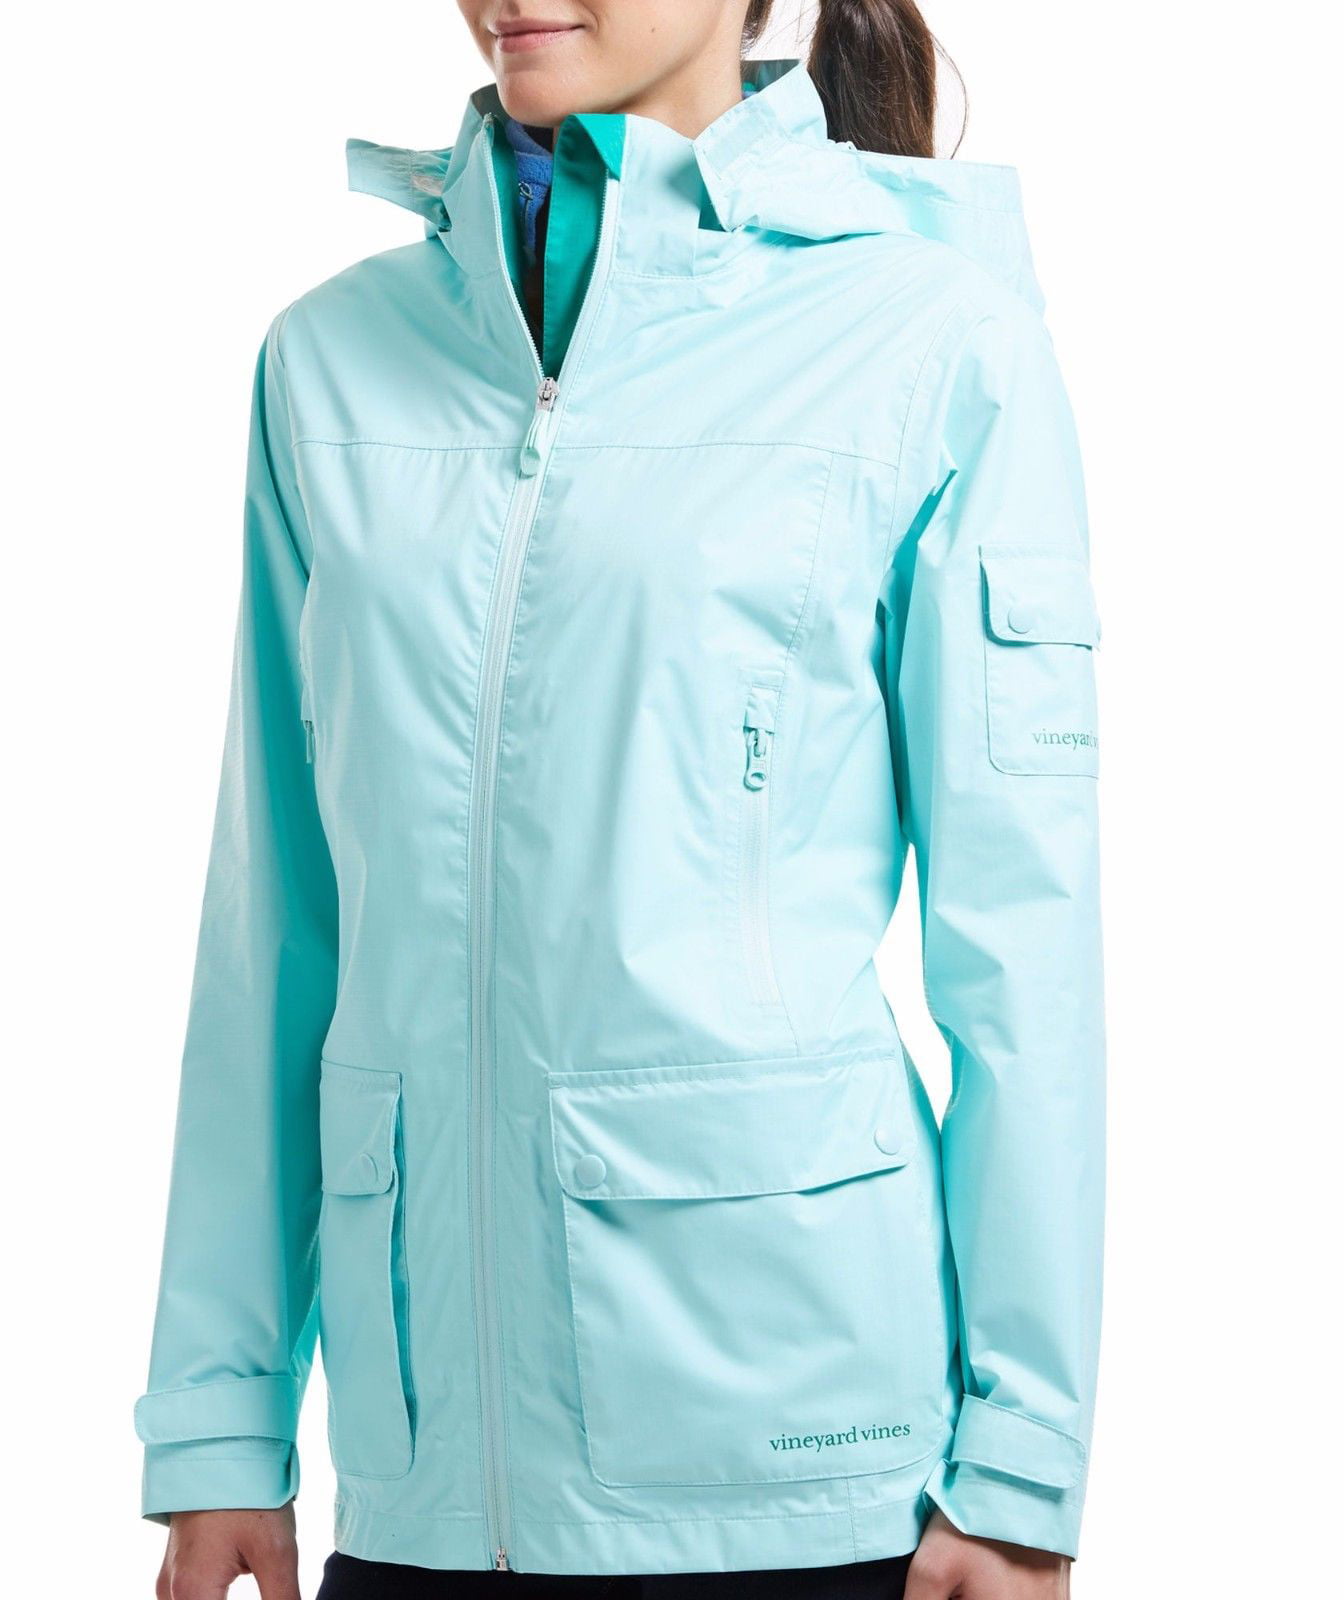 Vineyard Vines Women's 3 in 1 Rain Jacket Jacket Vest Crystal Blue $248.00 NWT